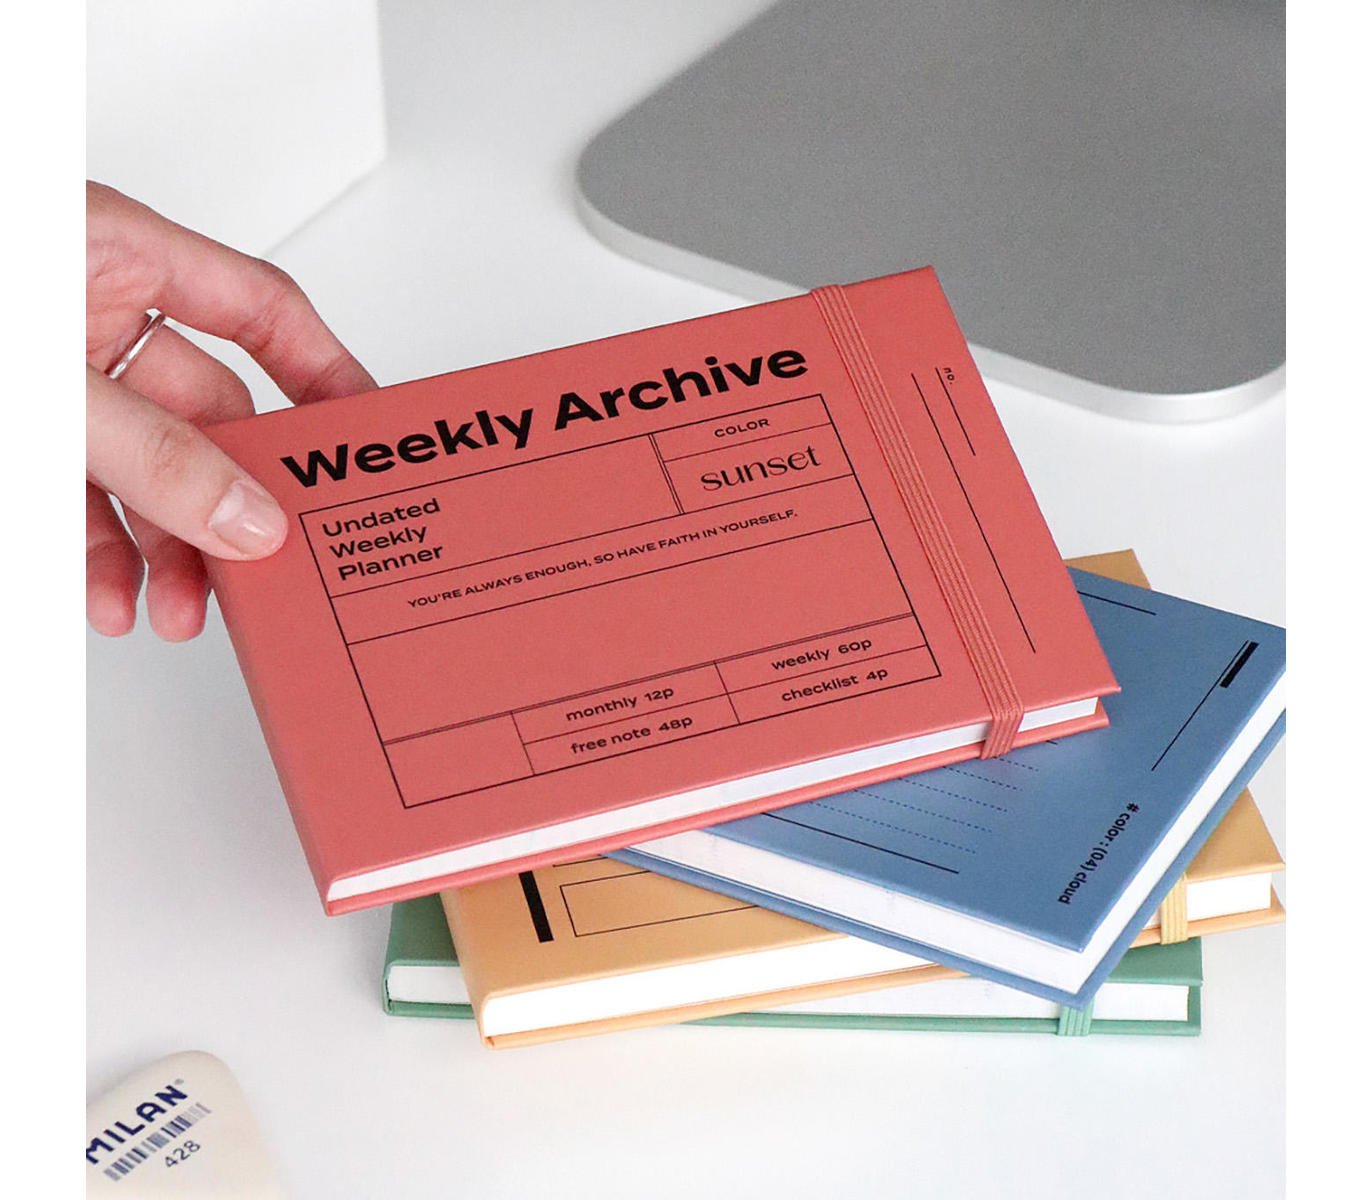 Weekly Archive 6 Months undated planner | Brick